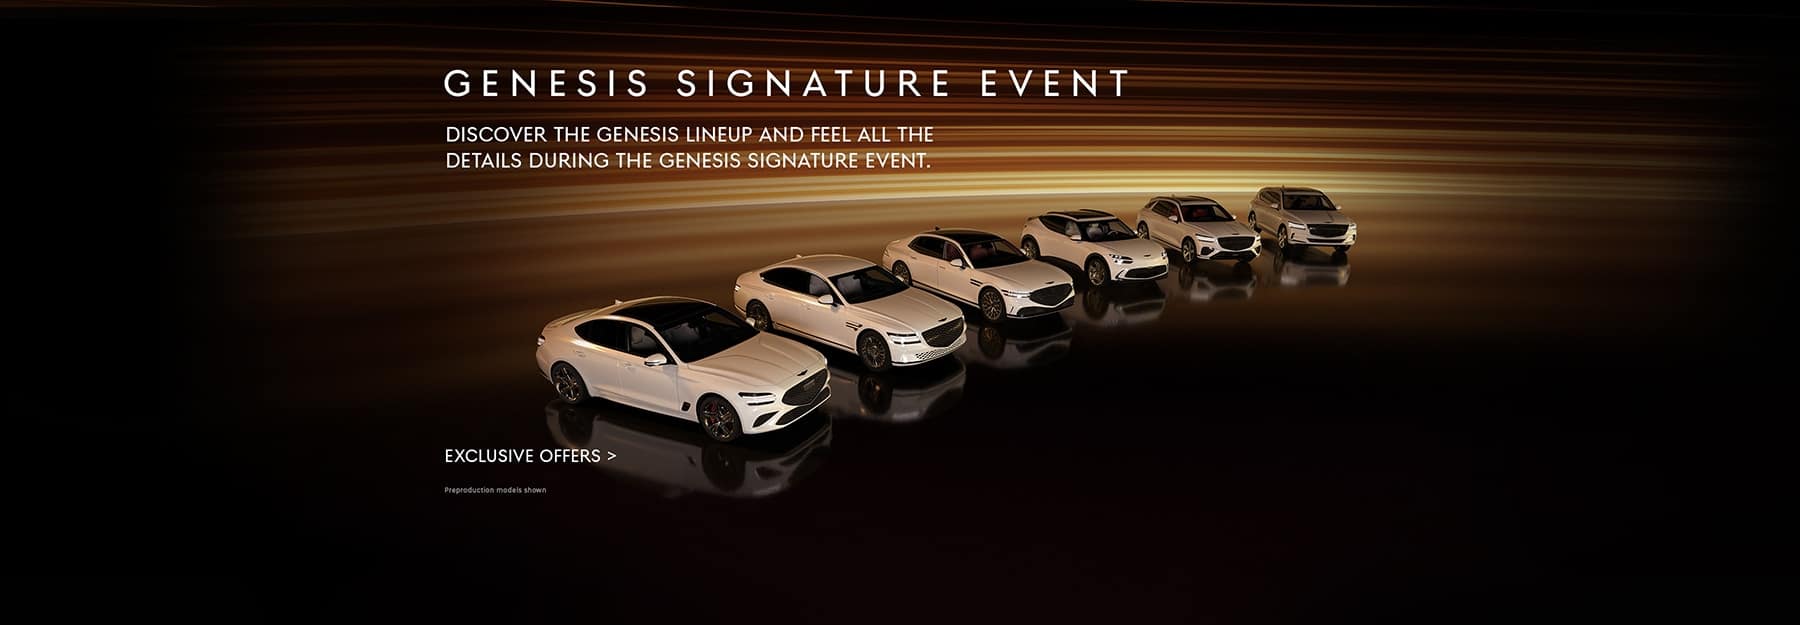 Genesis Signature Event